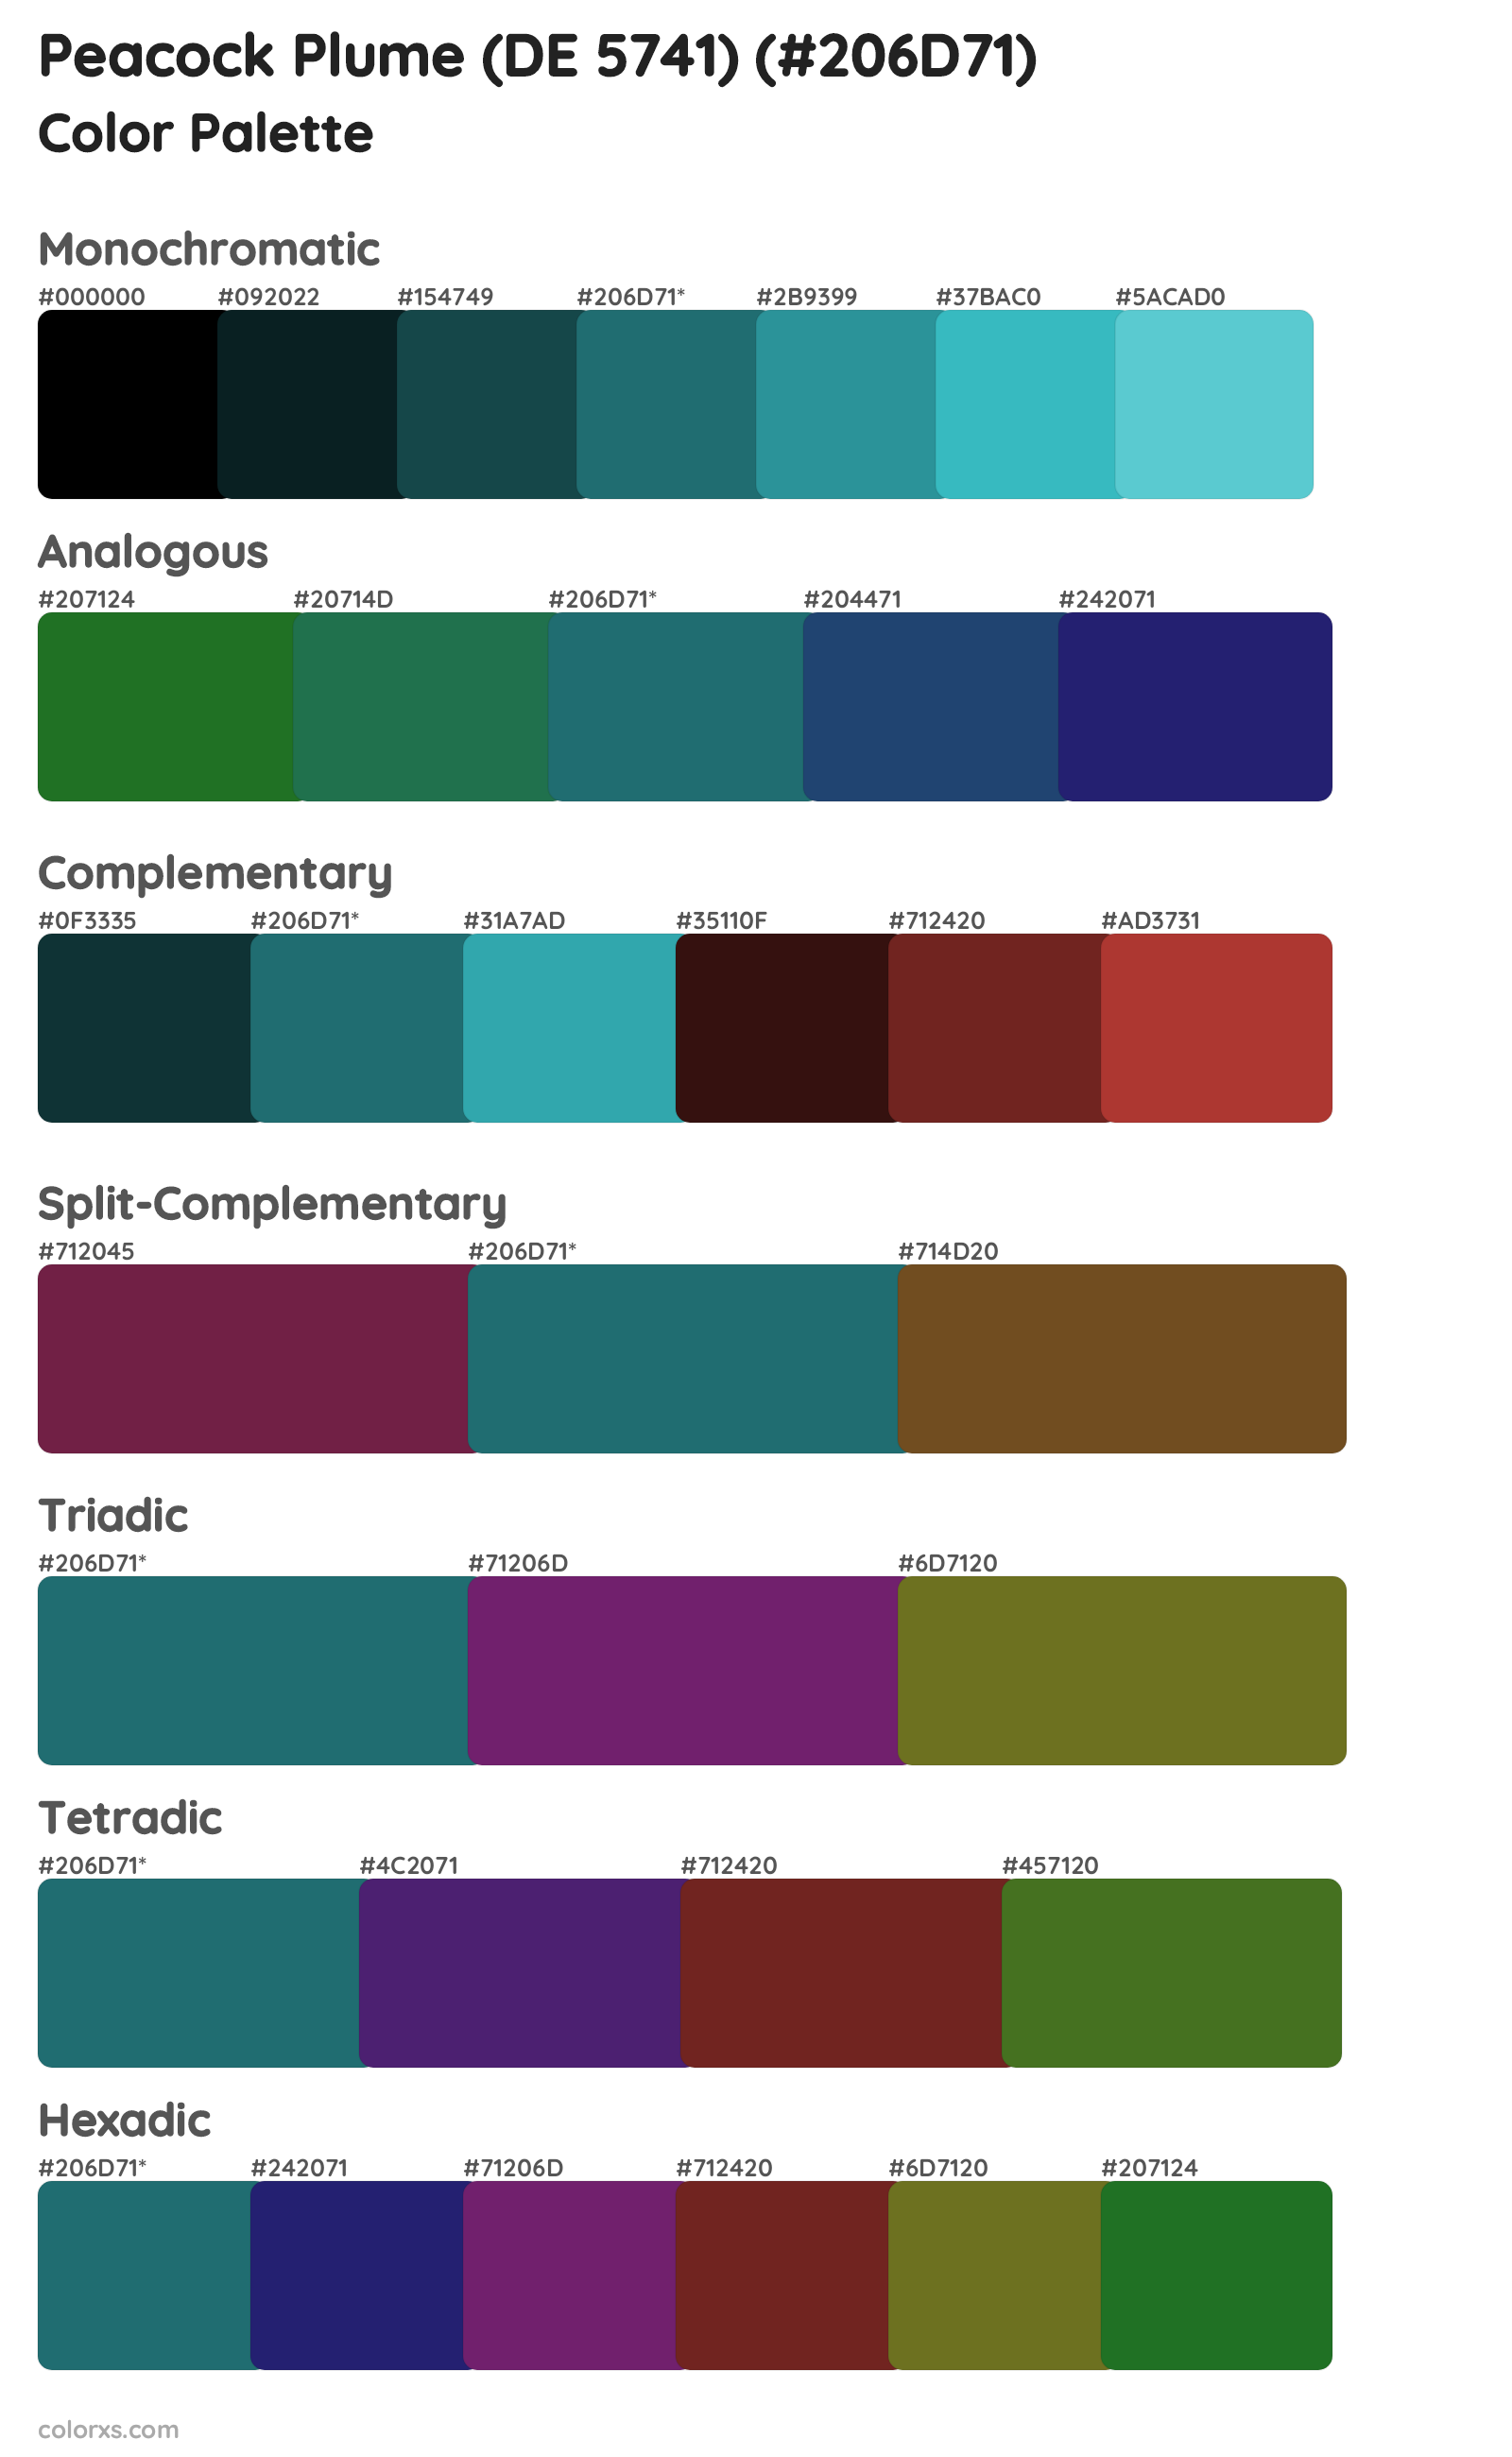 Peacock Plume (DE 5741) Color Scheme Palettes